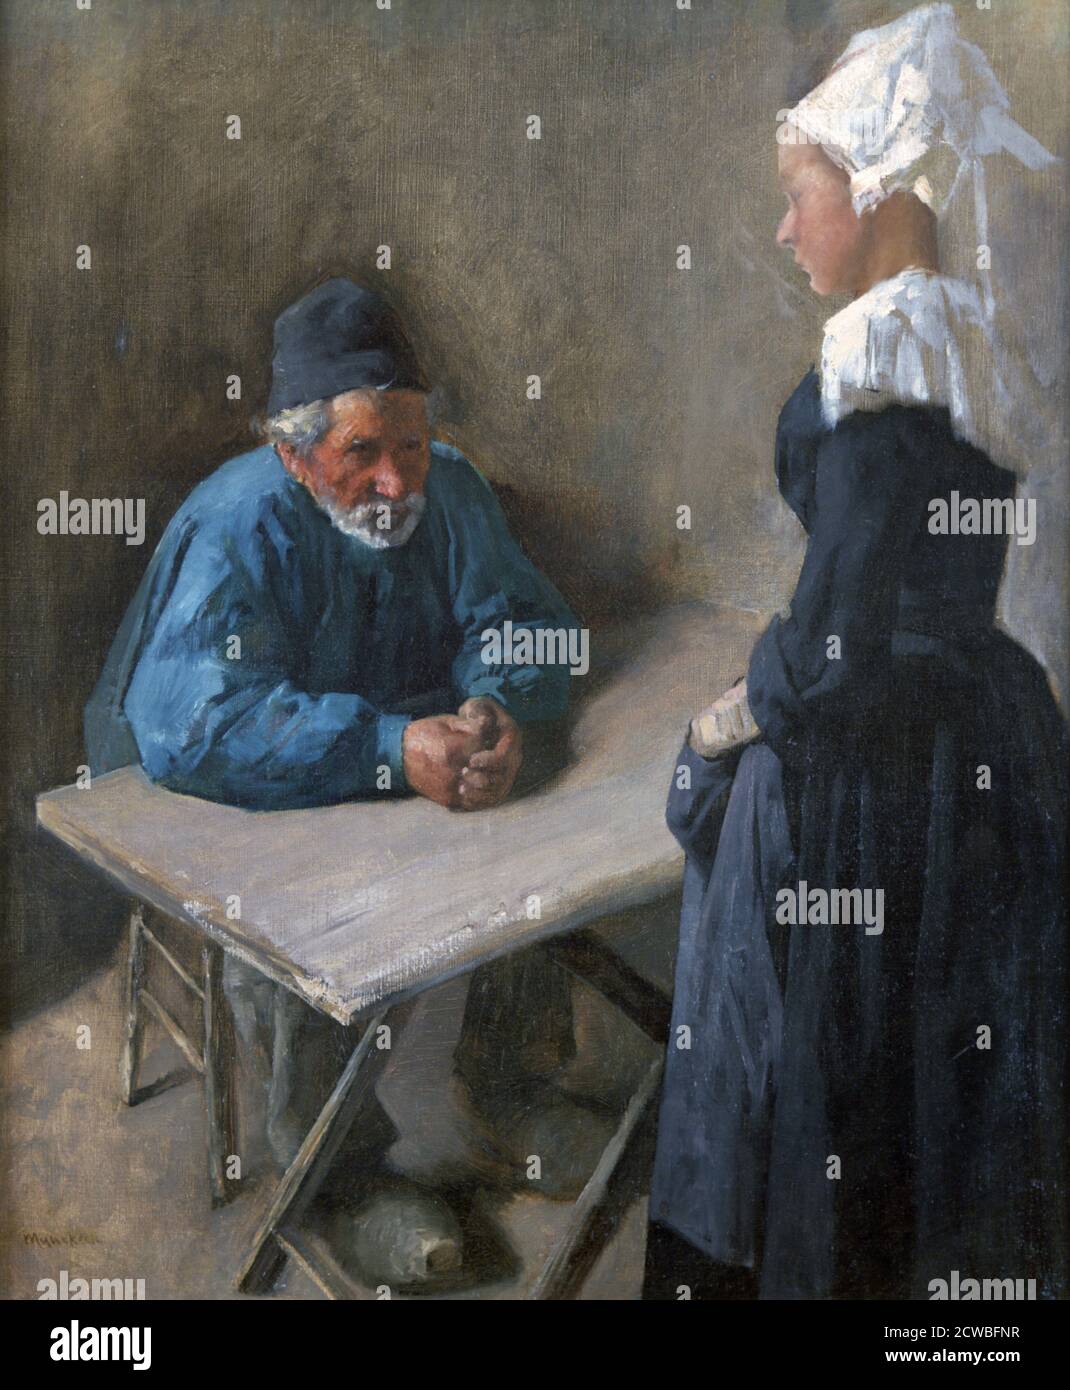 Die Verlobung der Magd', c1864-1900. Künstler: Mihaly Munkacsy. Mihaly Munkacsy (1844-1900) war ein ungarischer Maler. Mit seinen Genrebildern und großformatigen biblischen Gemälden erlangte er internationale Reputation. Stockfoto